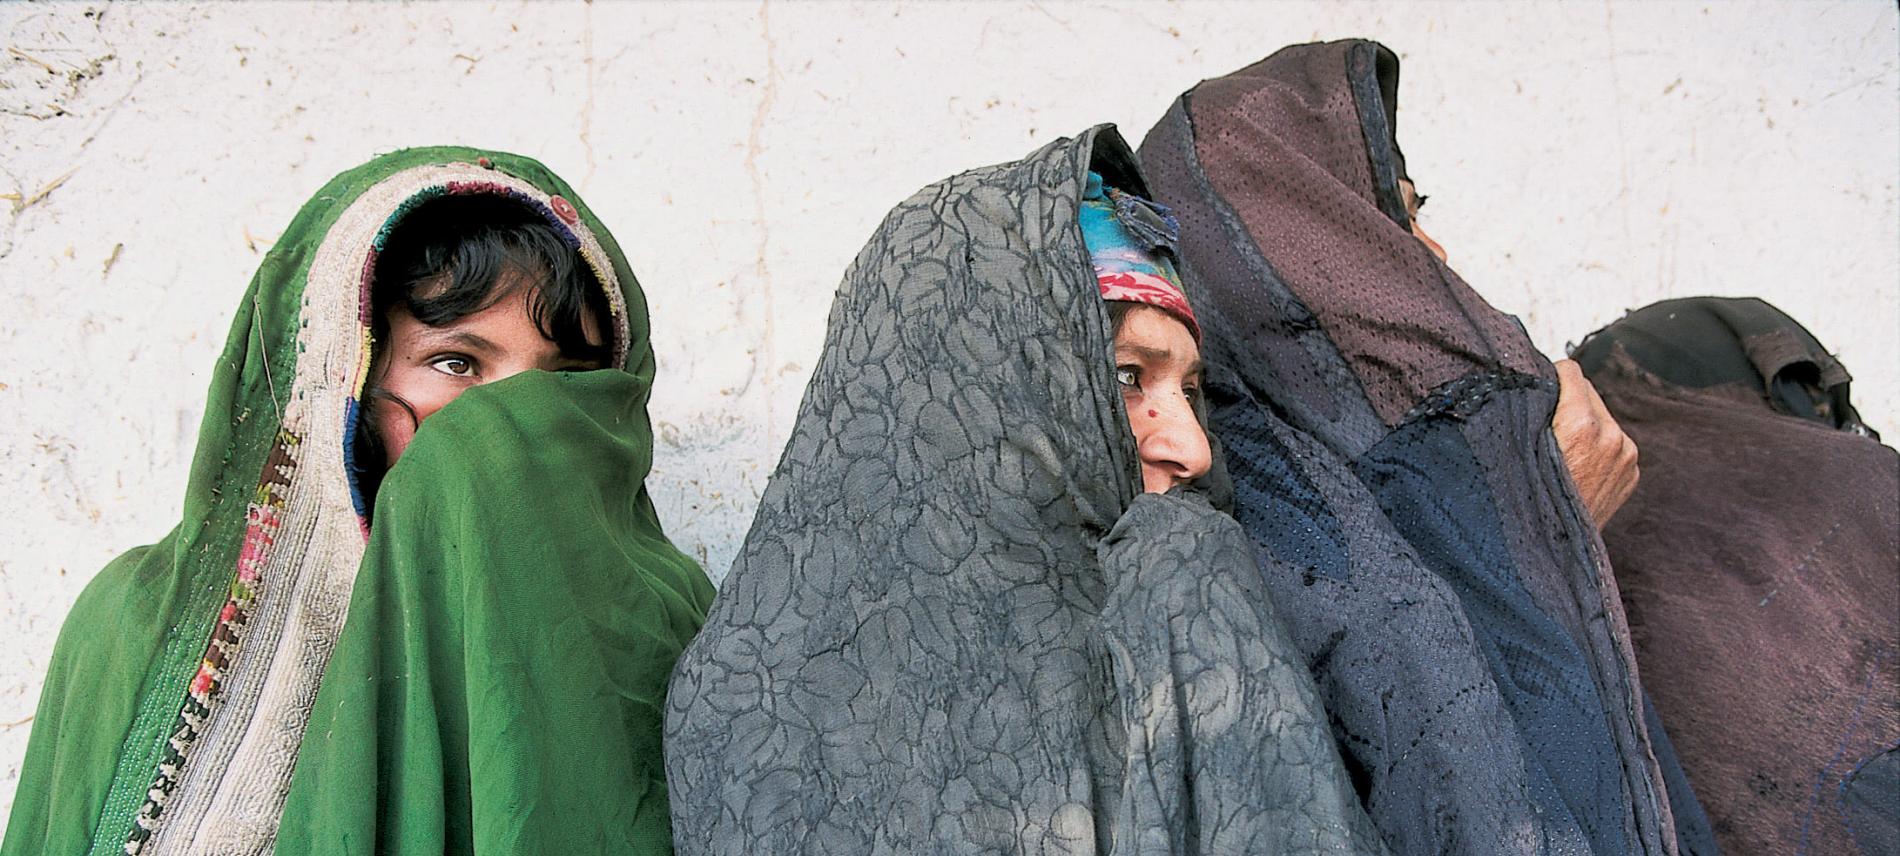 Afghanische Frauen. Foto: Stéphane Lehr